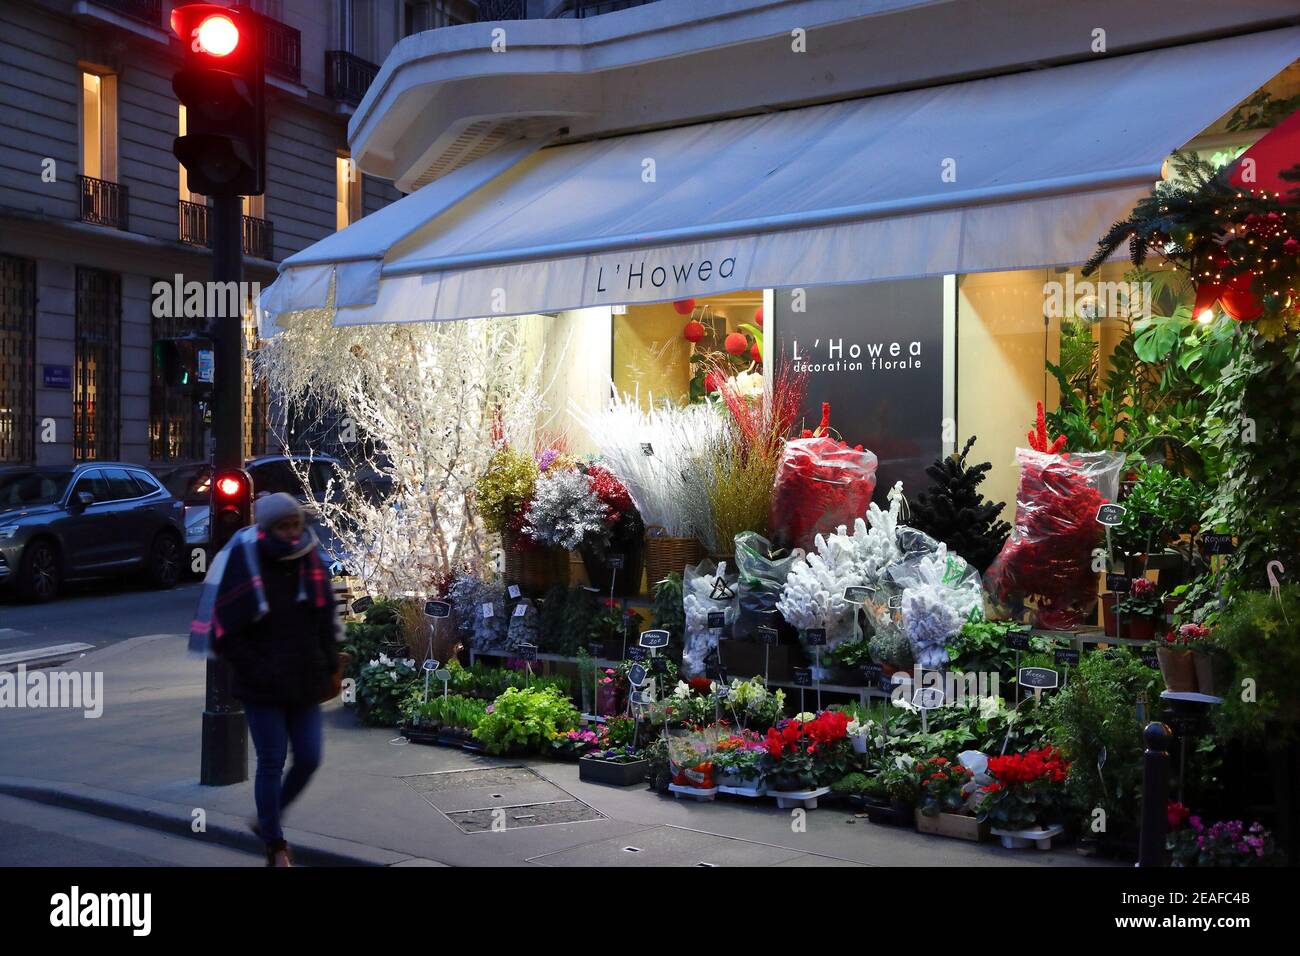 PARIGI, FRANCIA - 10 DICEMBRE 2019: Una persona cammina in un negozio di fiori nel settimo arrondissement di Parigi, Francia. Parigi è la città più grande della Francia, con 12. Foto Stock